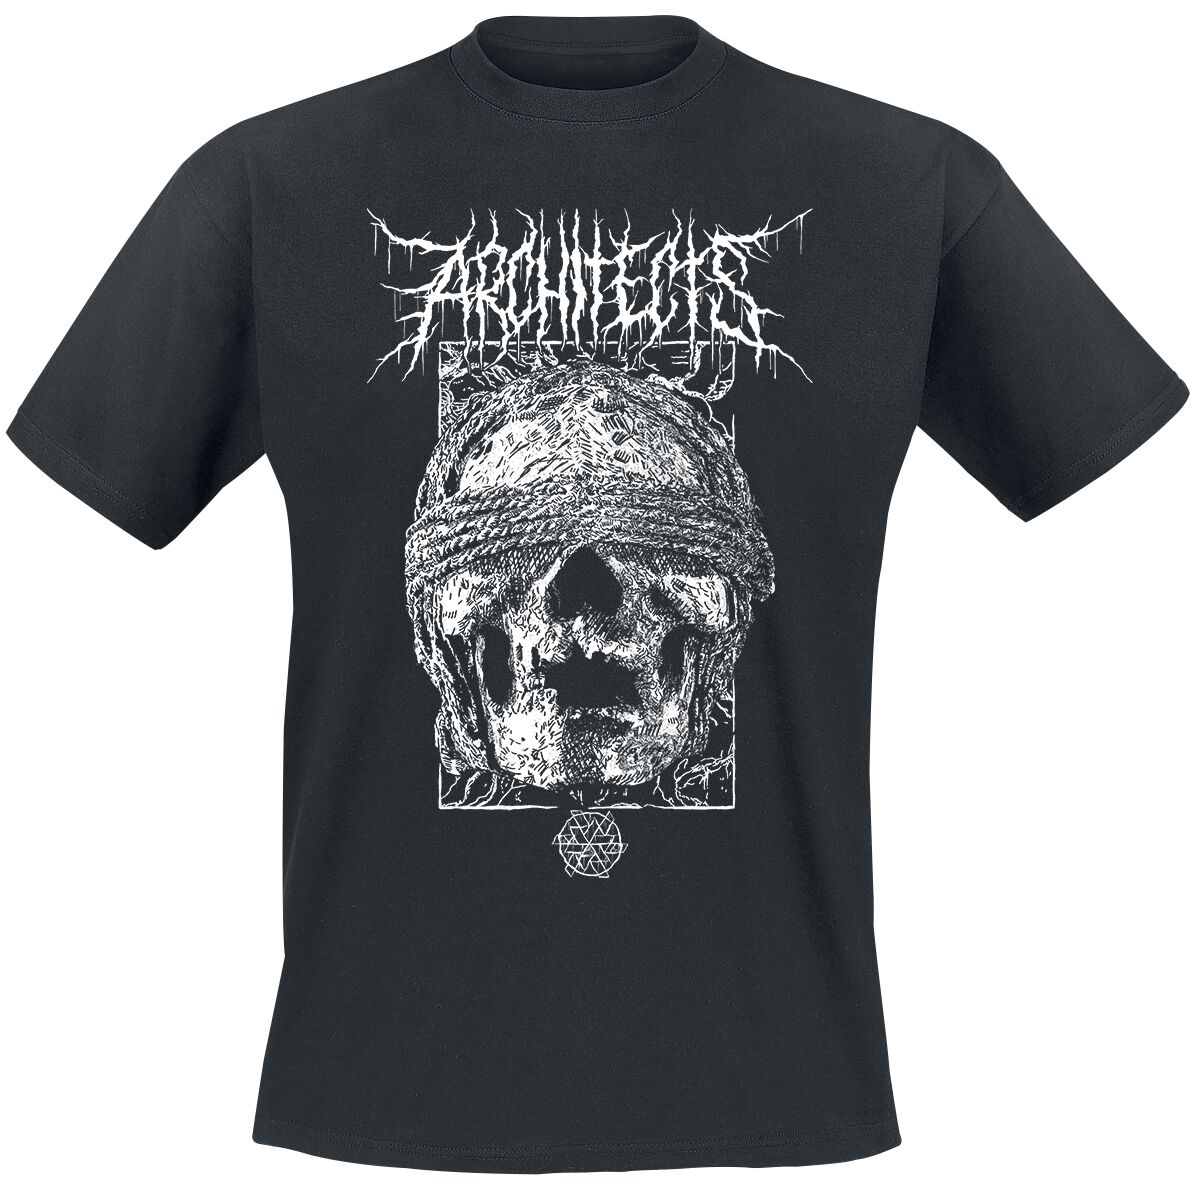 Architects T-Shirt - Blindfolded Skull - S bis XXL - für Männer - Größe L - schwarz  - Lizenziertes Merchandise!